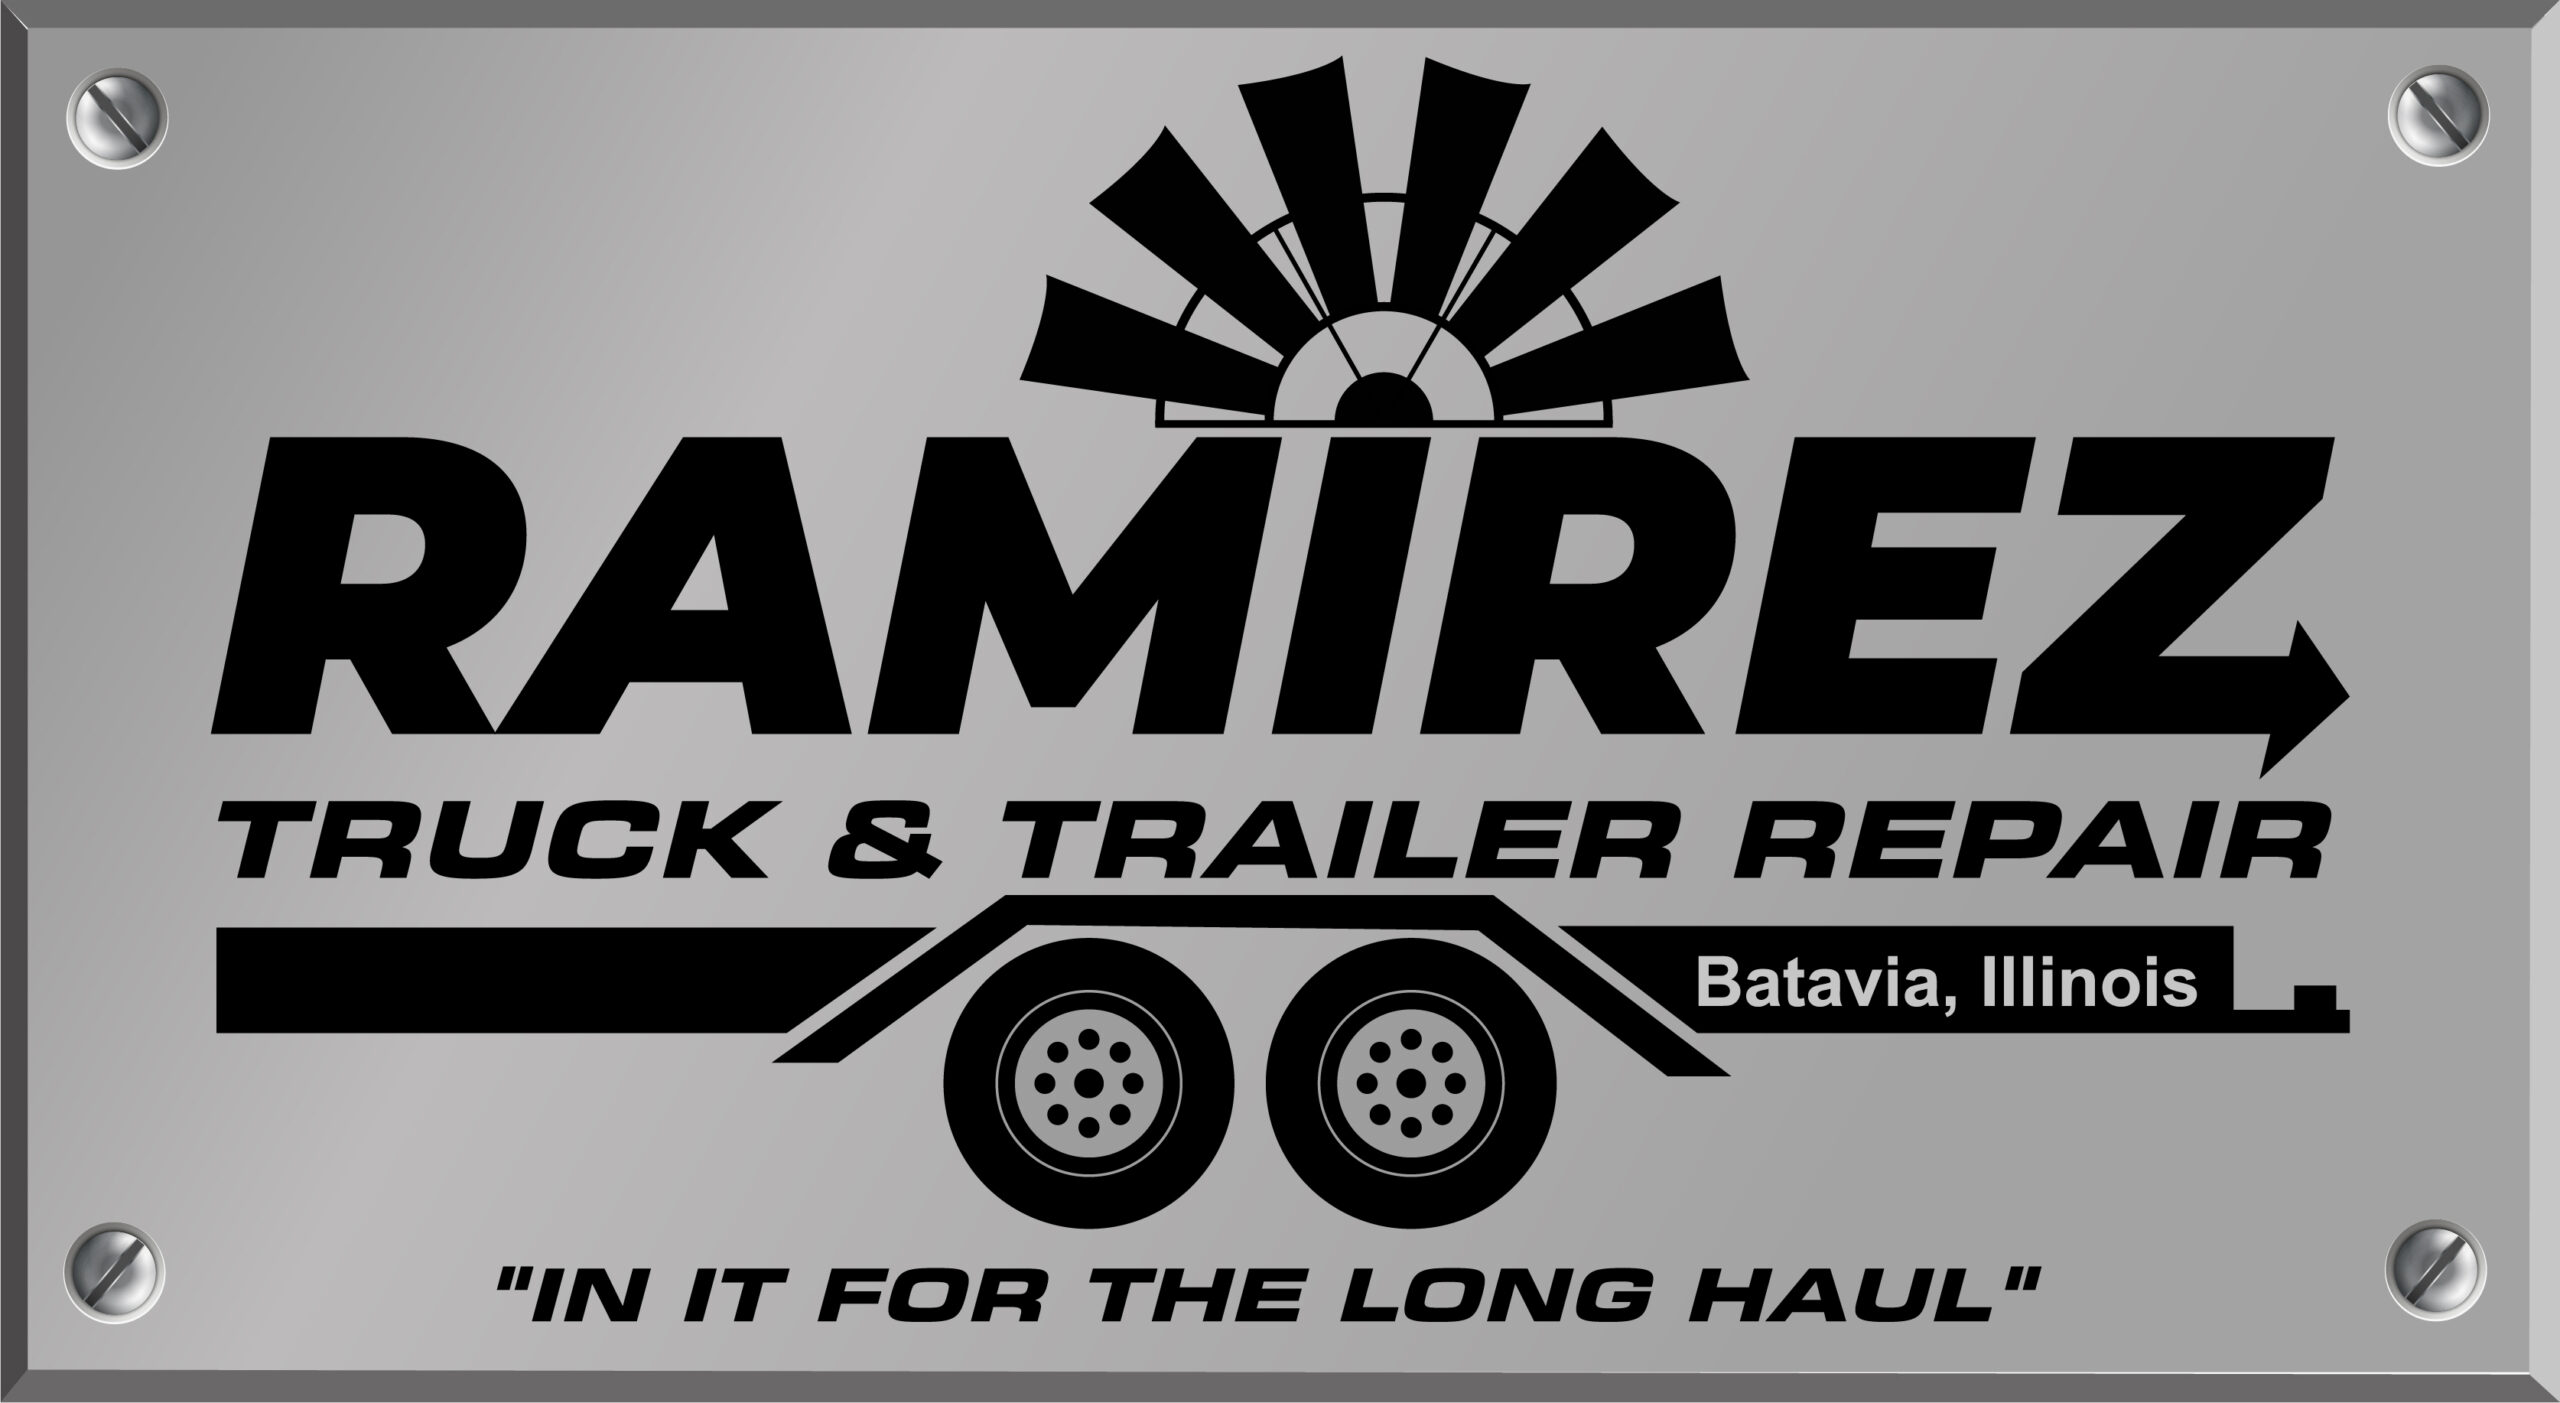 Ramirez Truck and Trailer Repair